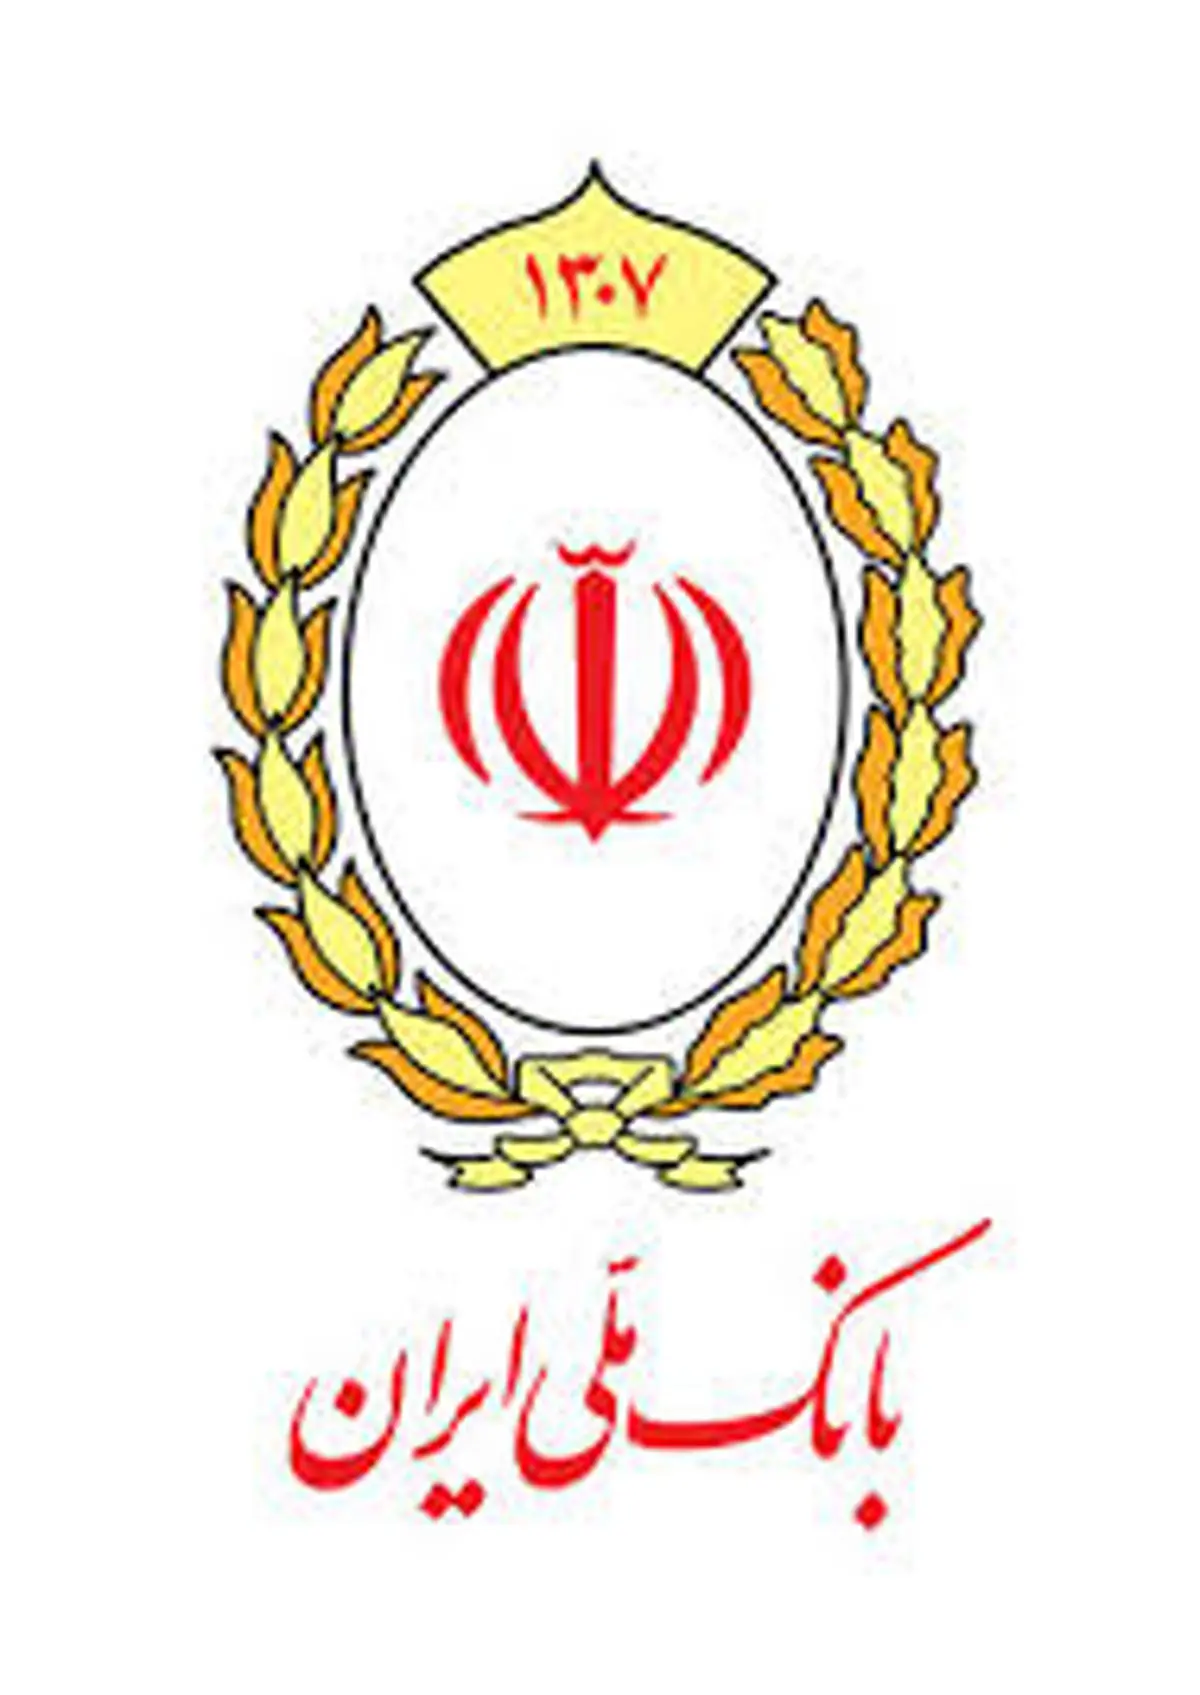 یک میلیون فقره تسهیلات، سهم بخش های اقتصادی از سبد اعتباری بانک ملی ایران

